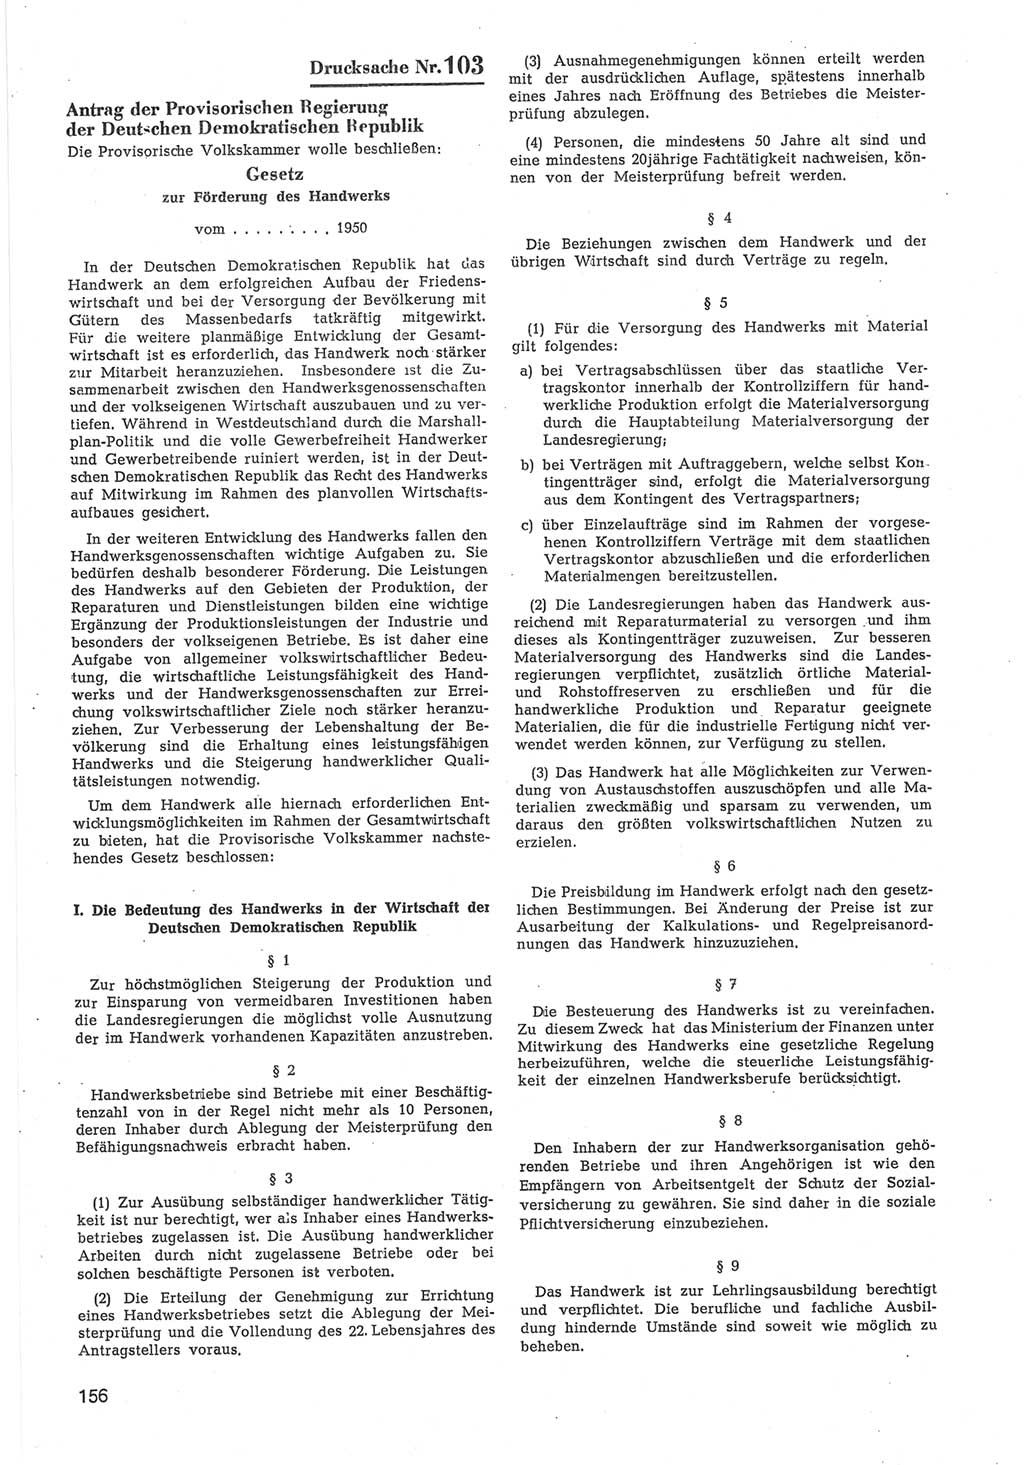 Provisorische Volkskammer (VK) der Deutschen Demokratischen Republik (DDR) 1949-1950, Dokument 758 (Prov. VK DDR 1949-1950, Dok. 758)